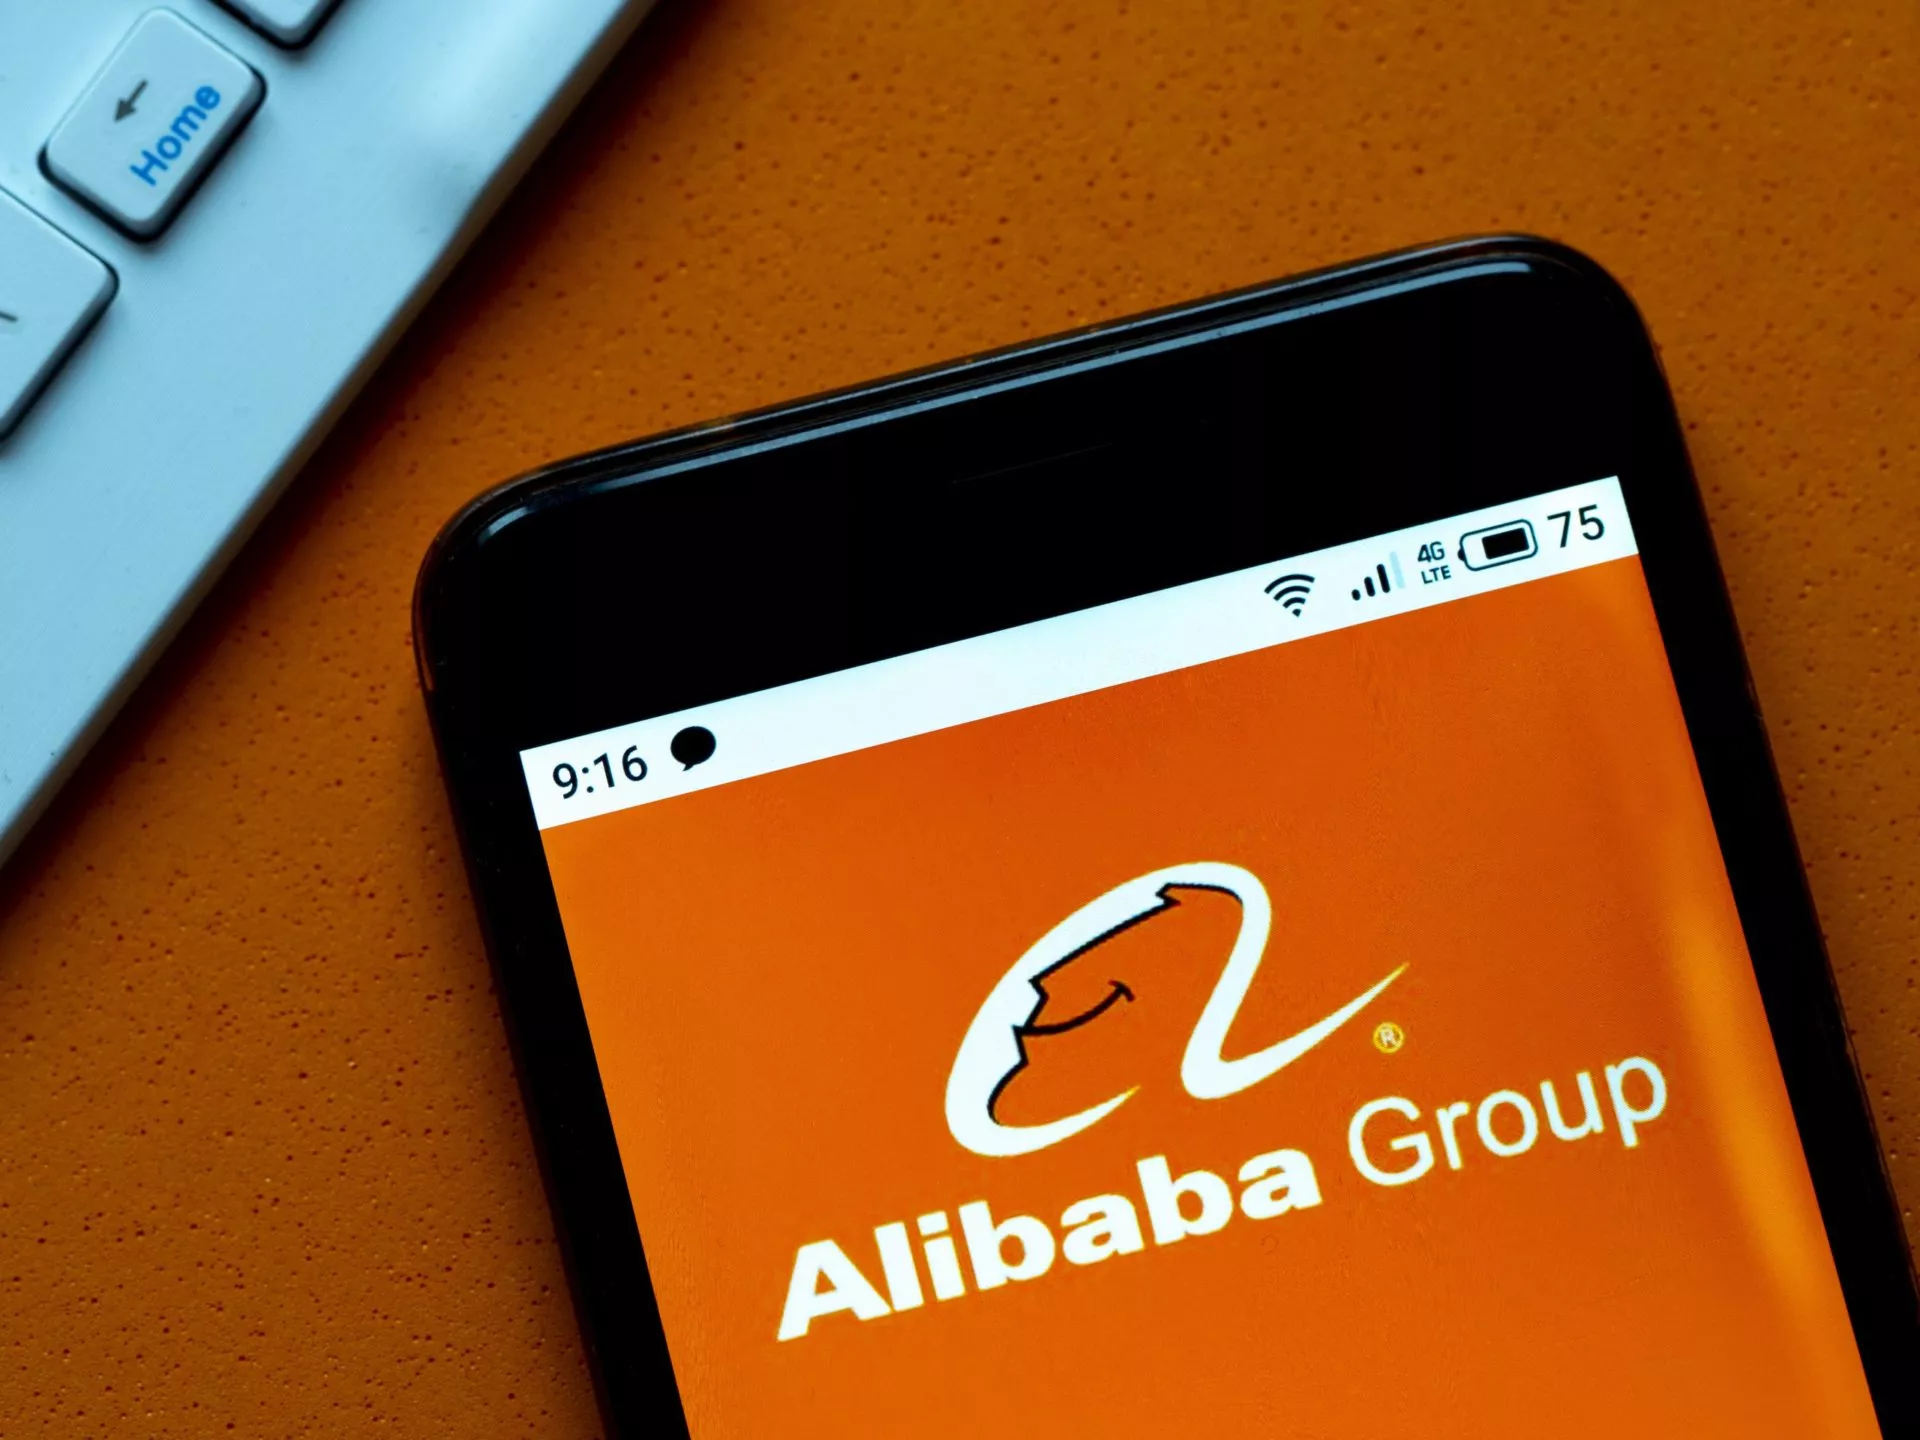 De vice-voorzitter van Alibaba is een voorstander van crypto valuta